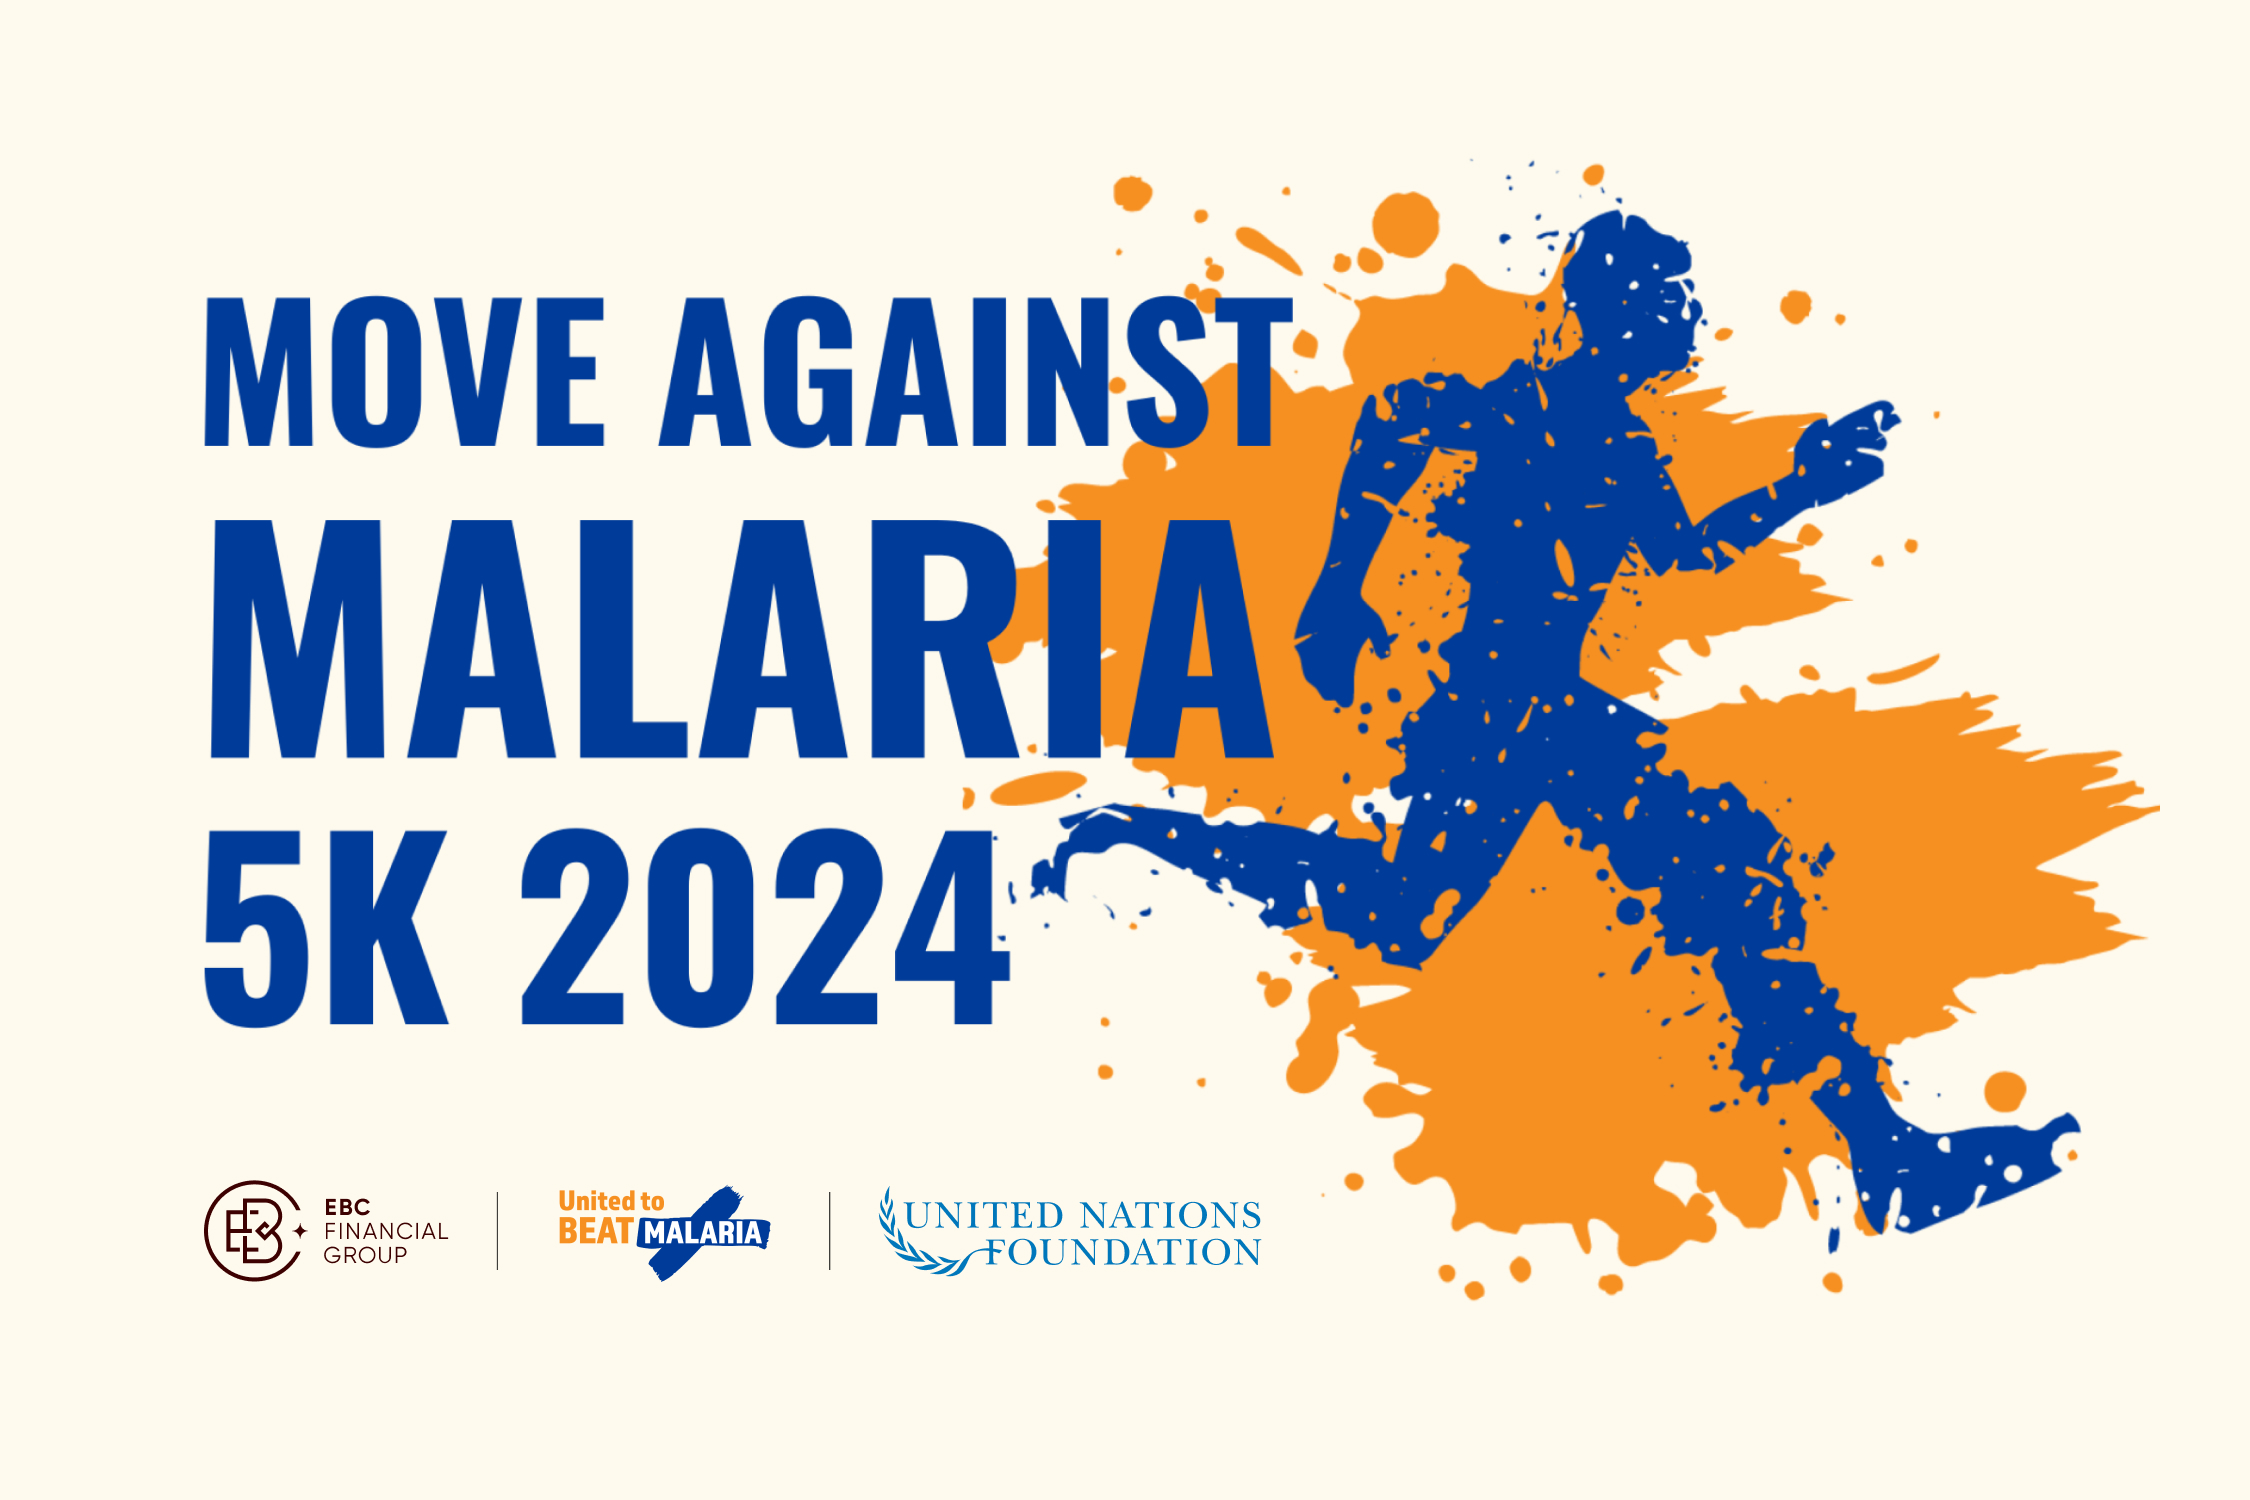 Schließen Sie sich zwischen dem 25. April und dem 5. Mai 2024 Unterstützern auf der ganzen Welt an und nehmen Sie an „Move Against Malaria“ teil, einer virtuellen Veranstaltung, um das Bewusstsein für Malaria zu schärfen und Geldmittel für lebensrettende Behandlungsmethoden und Programme zu sammeln.